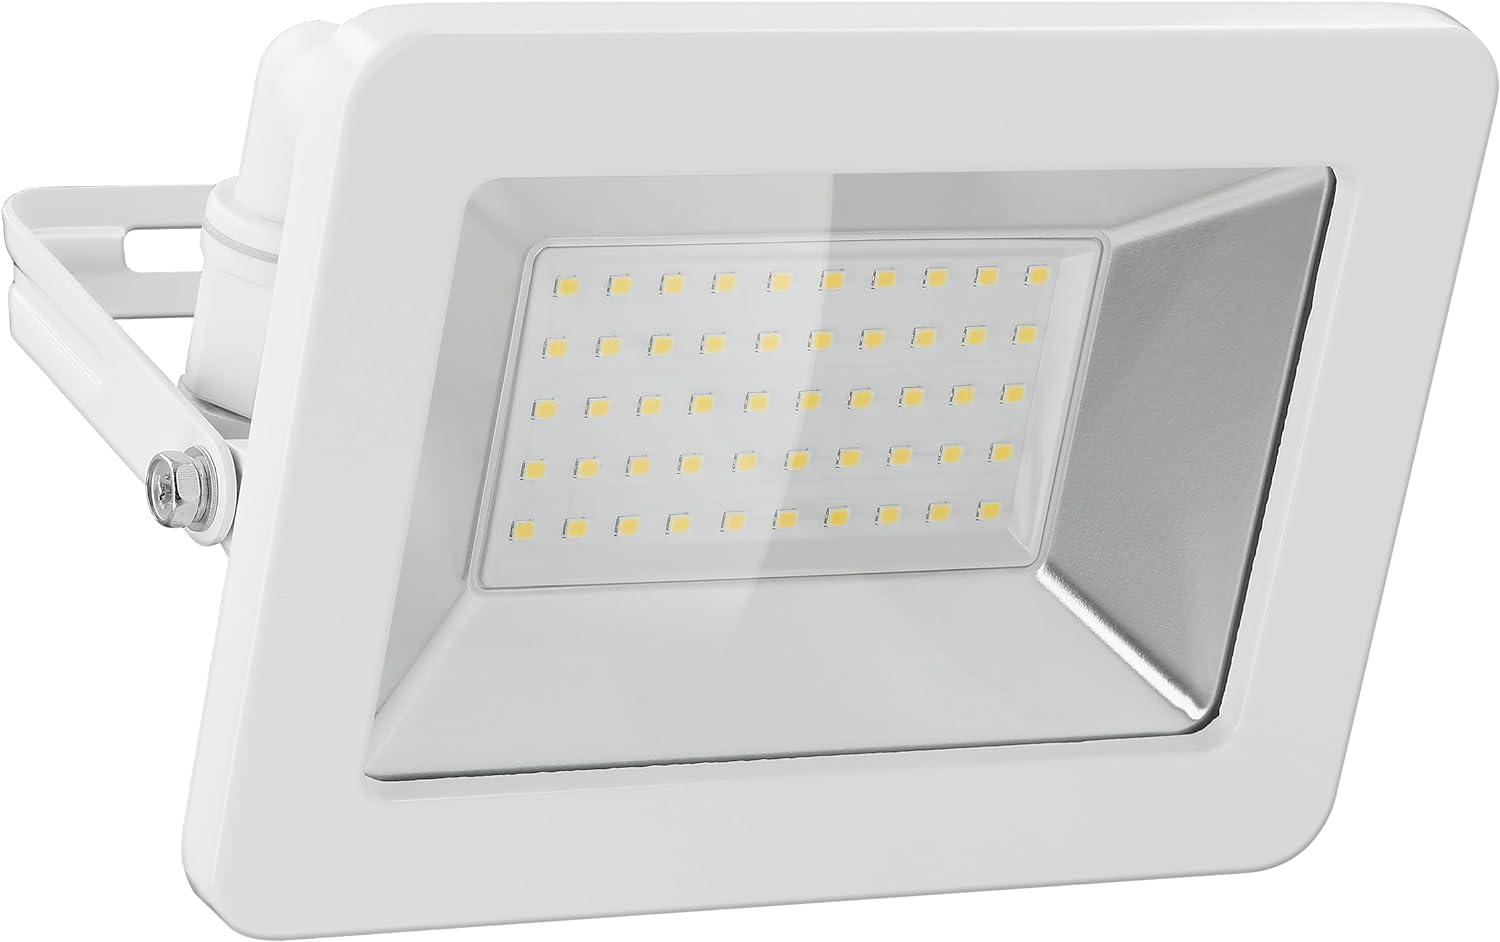 goobay 53875 LED Strahler Außen 50W / Außenstrahler IP65 / Neutralweißes Licht 4250 lm/LED Scheinwerfer Fluter Wandmontage / IP65 Gartenstrahler/Weiß Bild 1